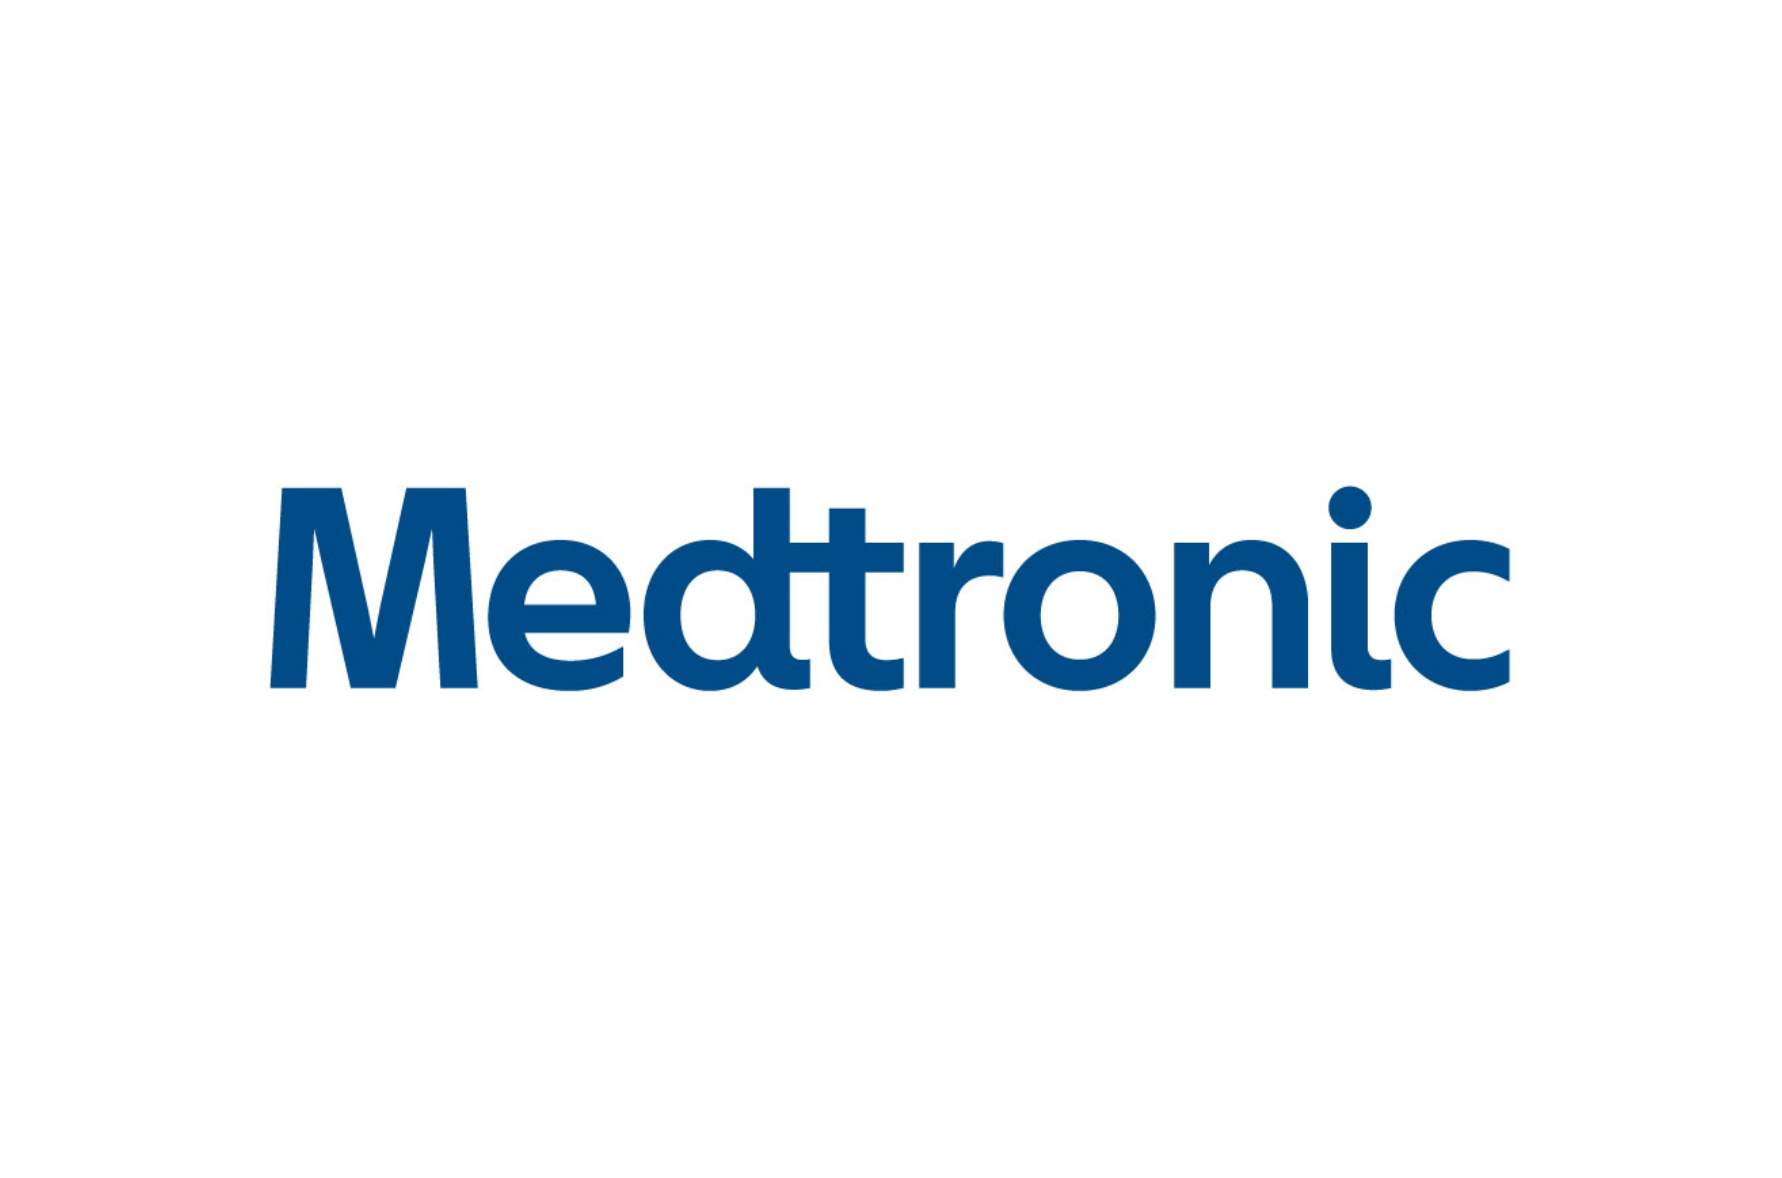 Medtronic Logo